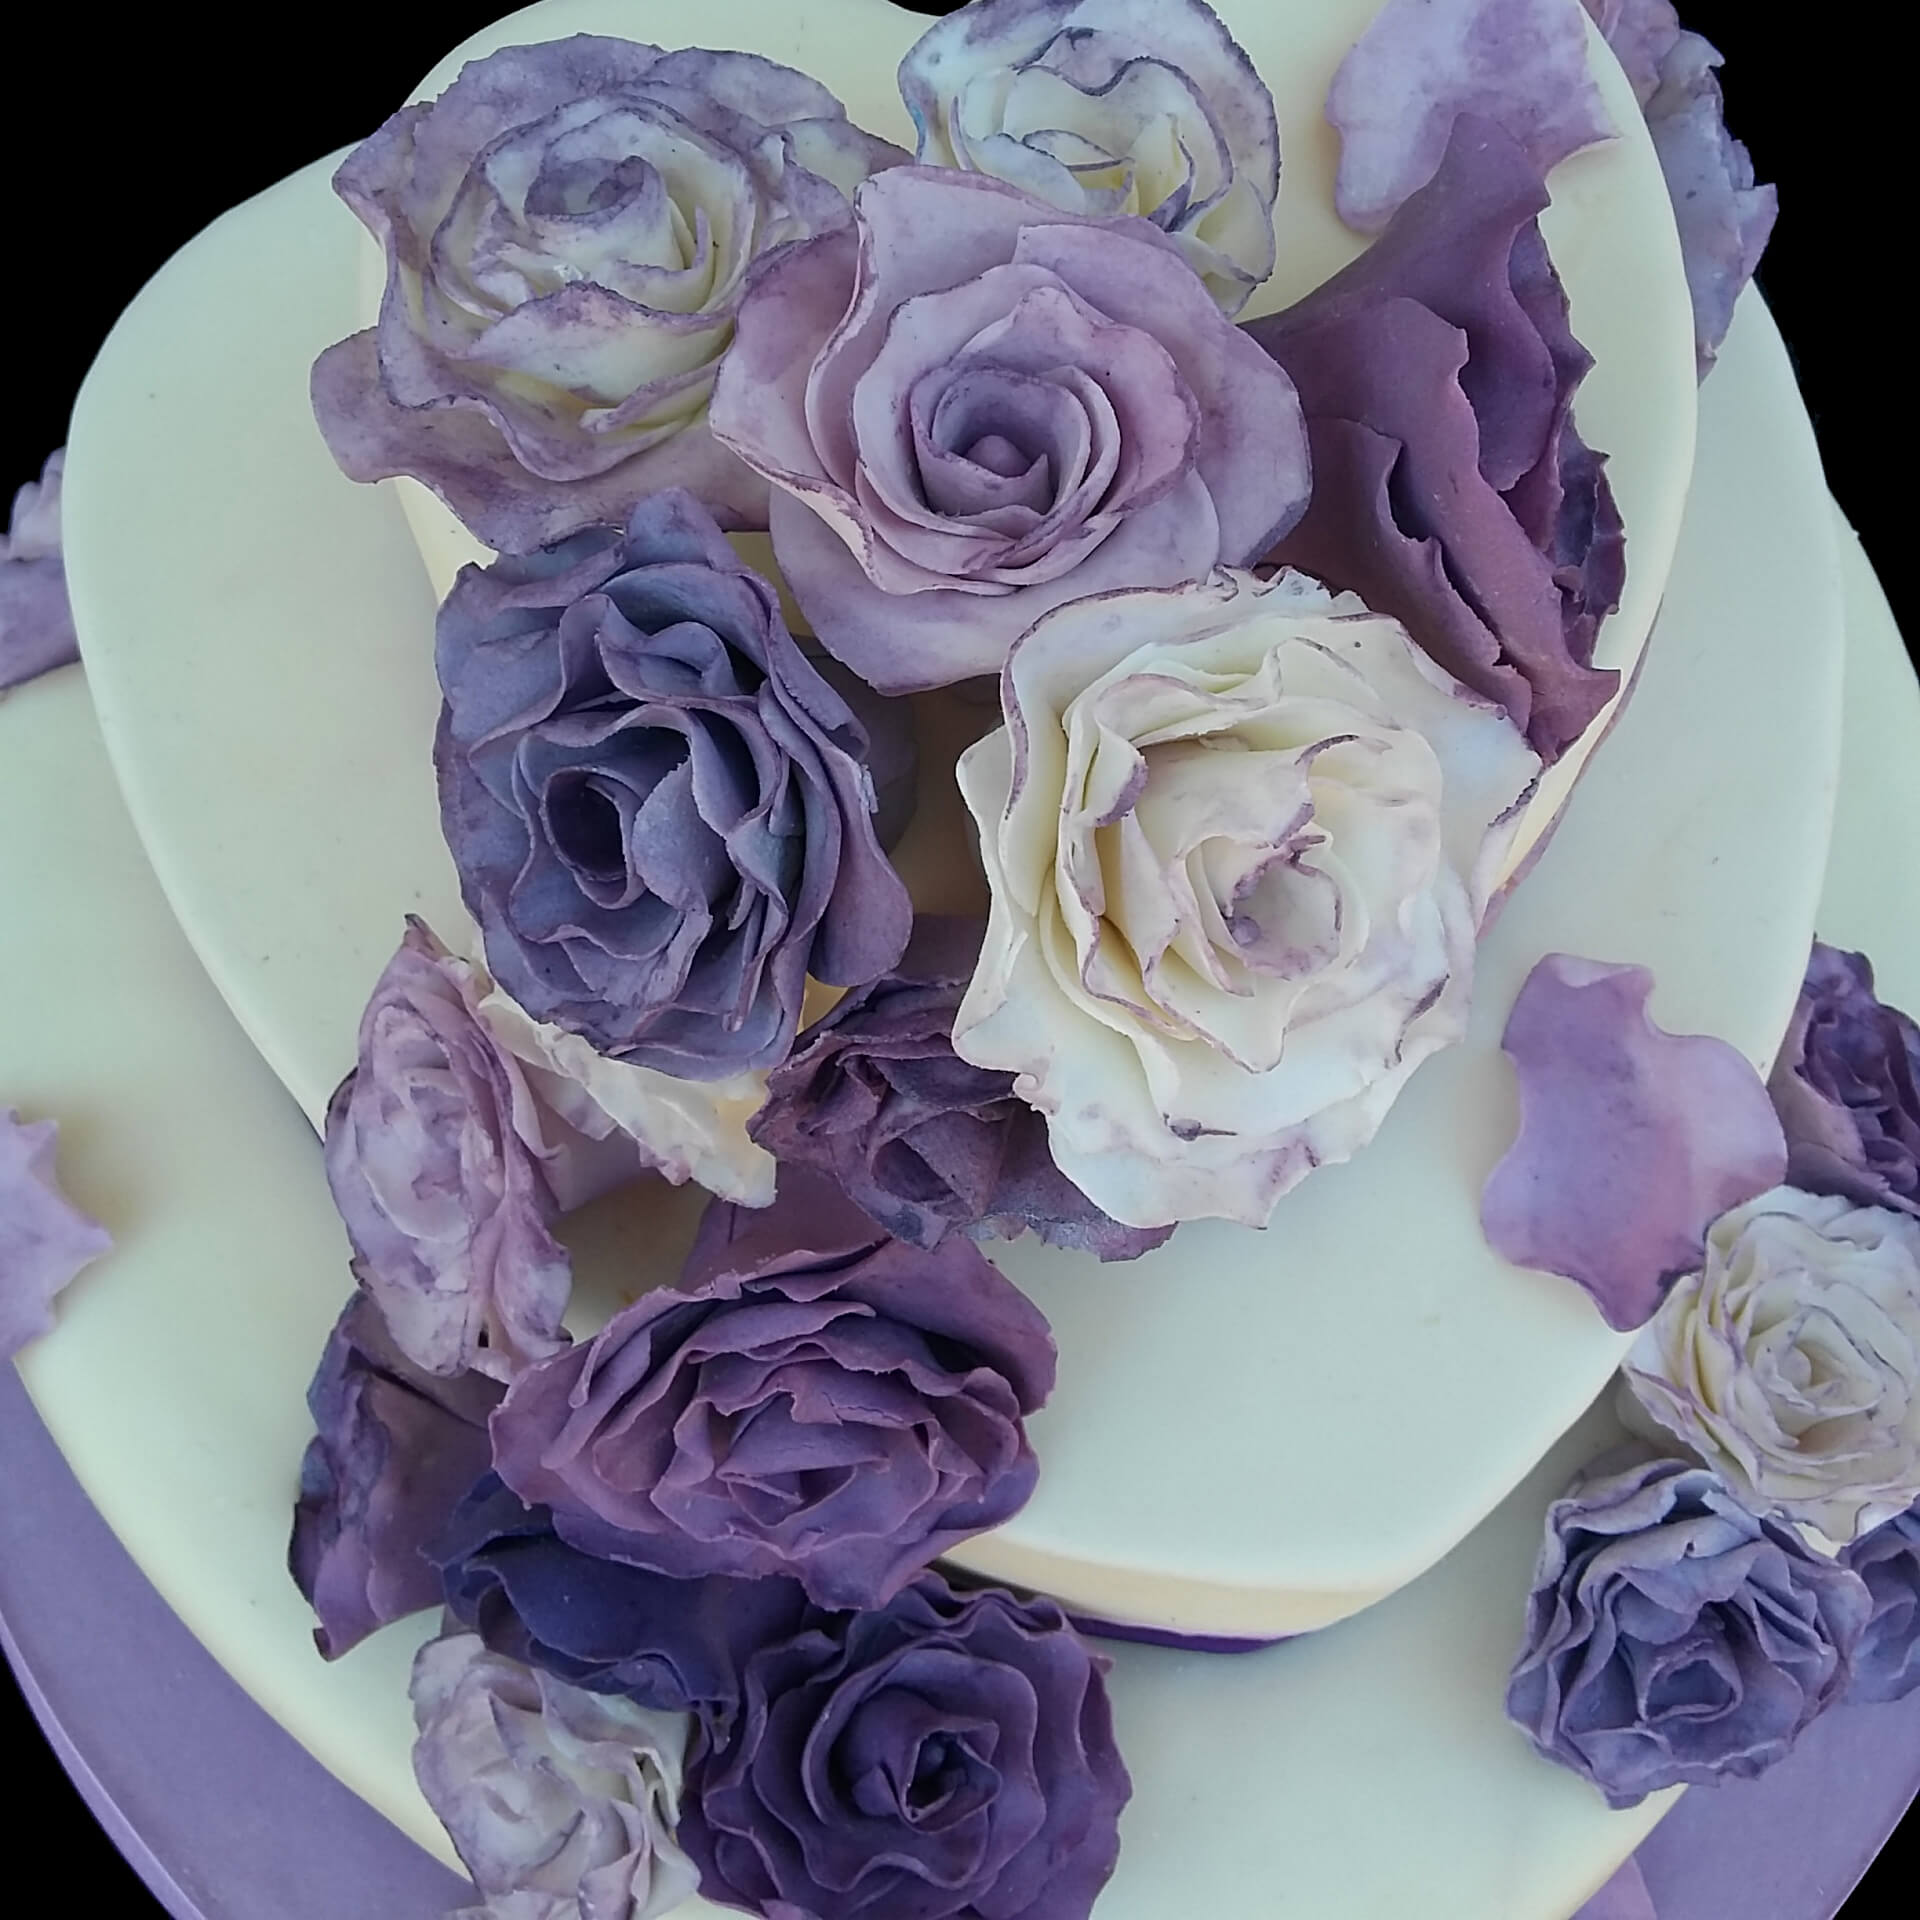 Rose viola in pasta di zucchero